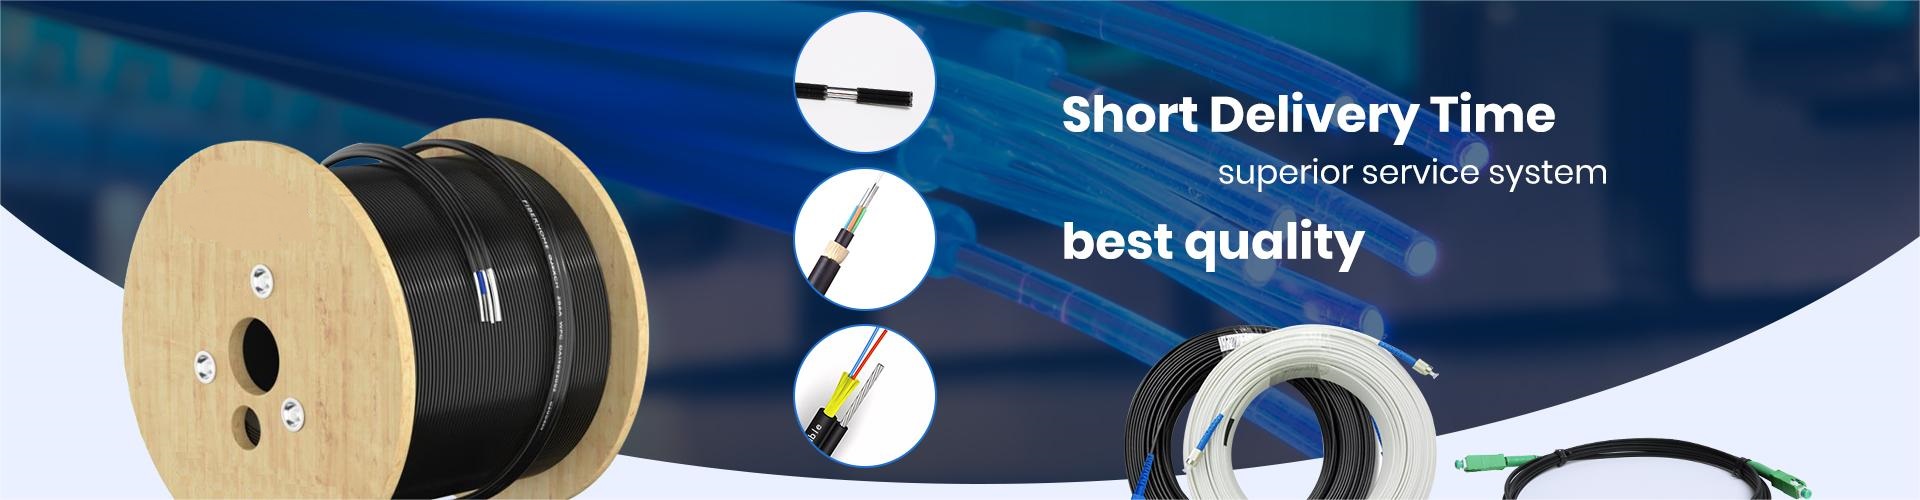 Flat Fiber Optic Cable, Fiber Optic Connector Types, Fiber Optic Network Cable, Fiber Optic Contractor - Guandi